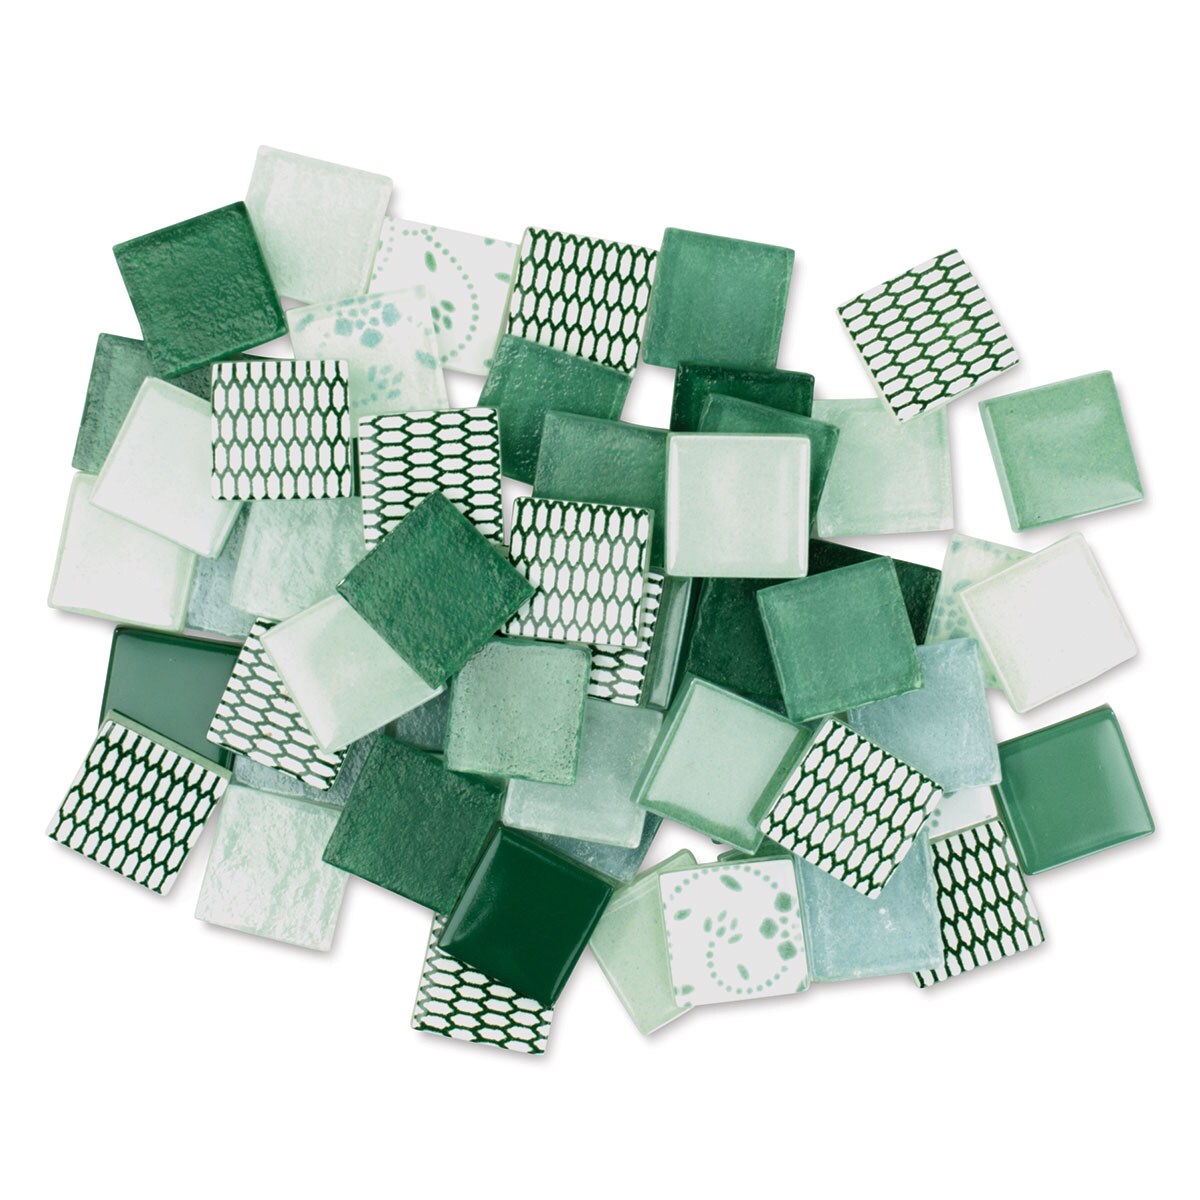 Mosaic Mercantile Patchwork Tiles - Grass/Mint Green, 3 lb